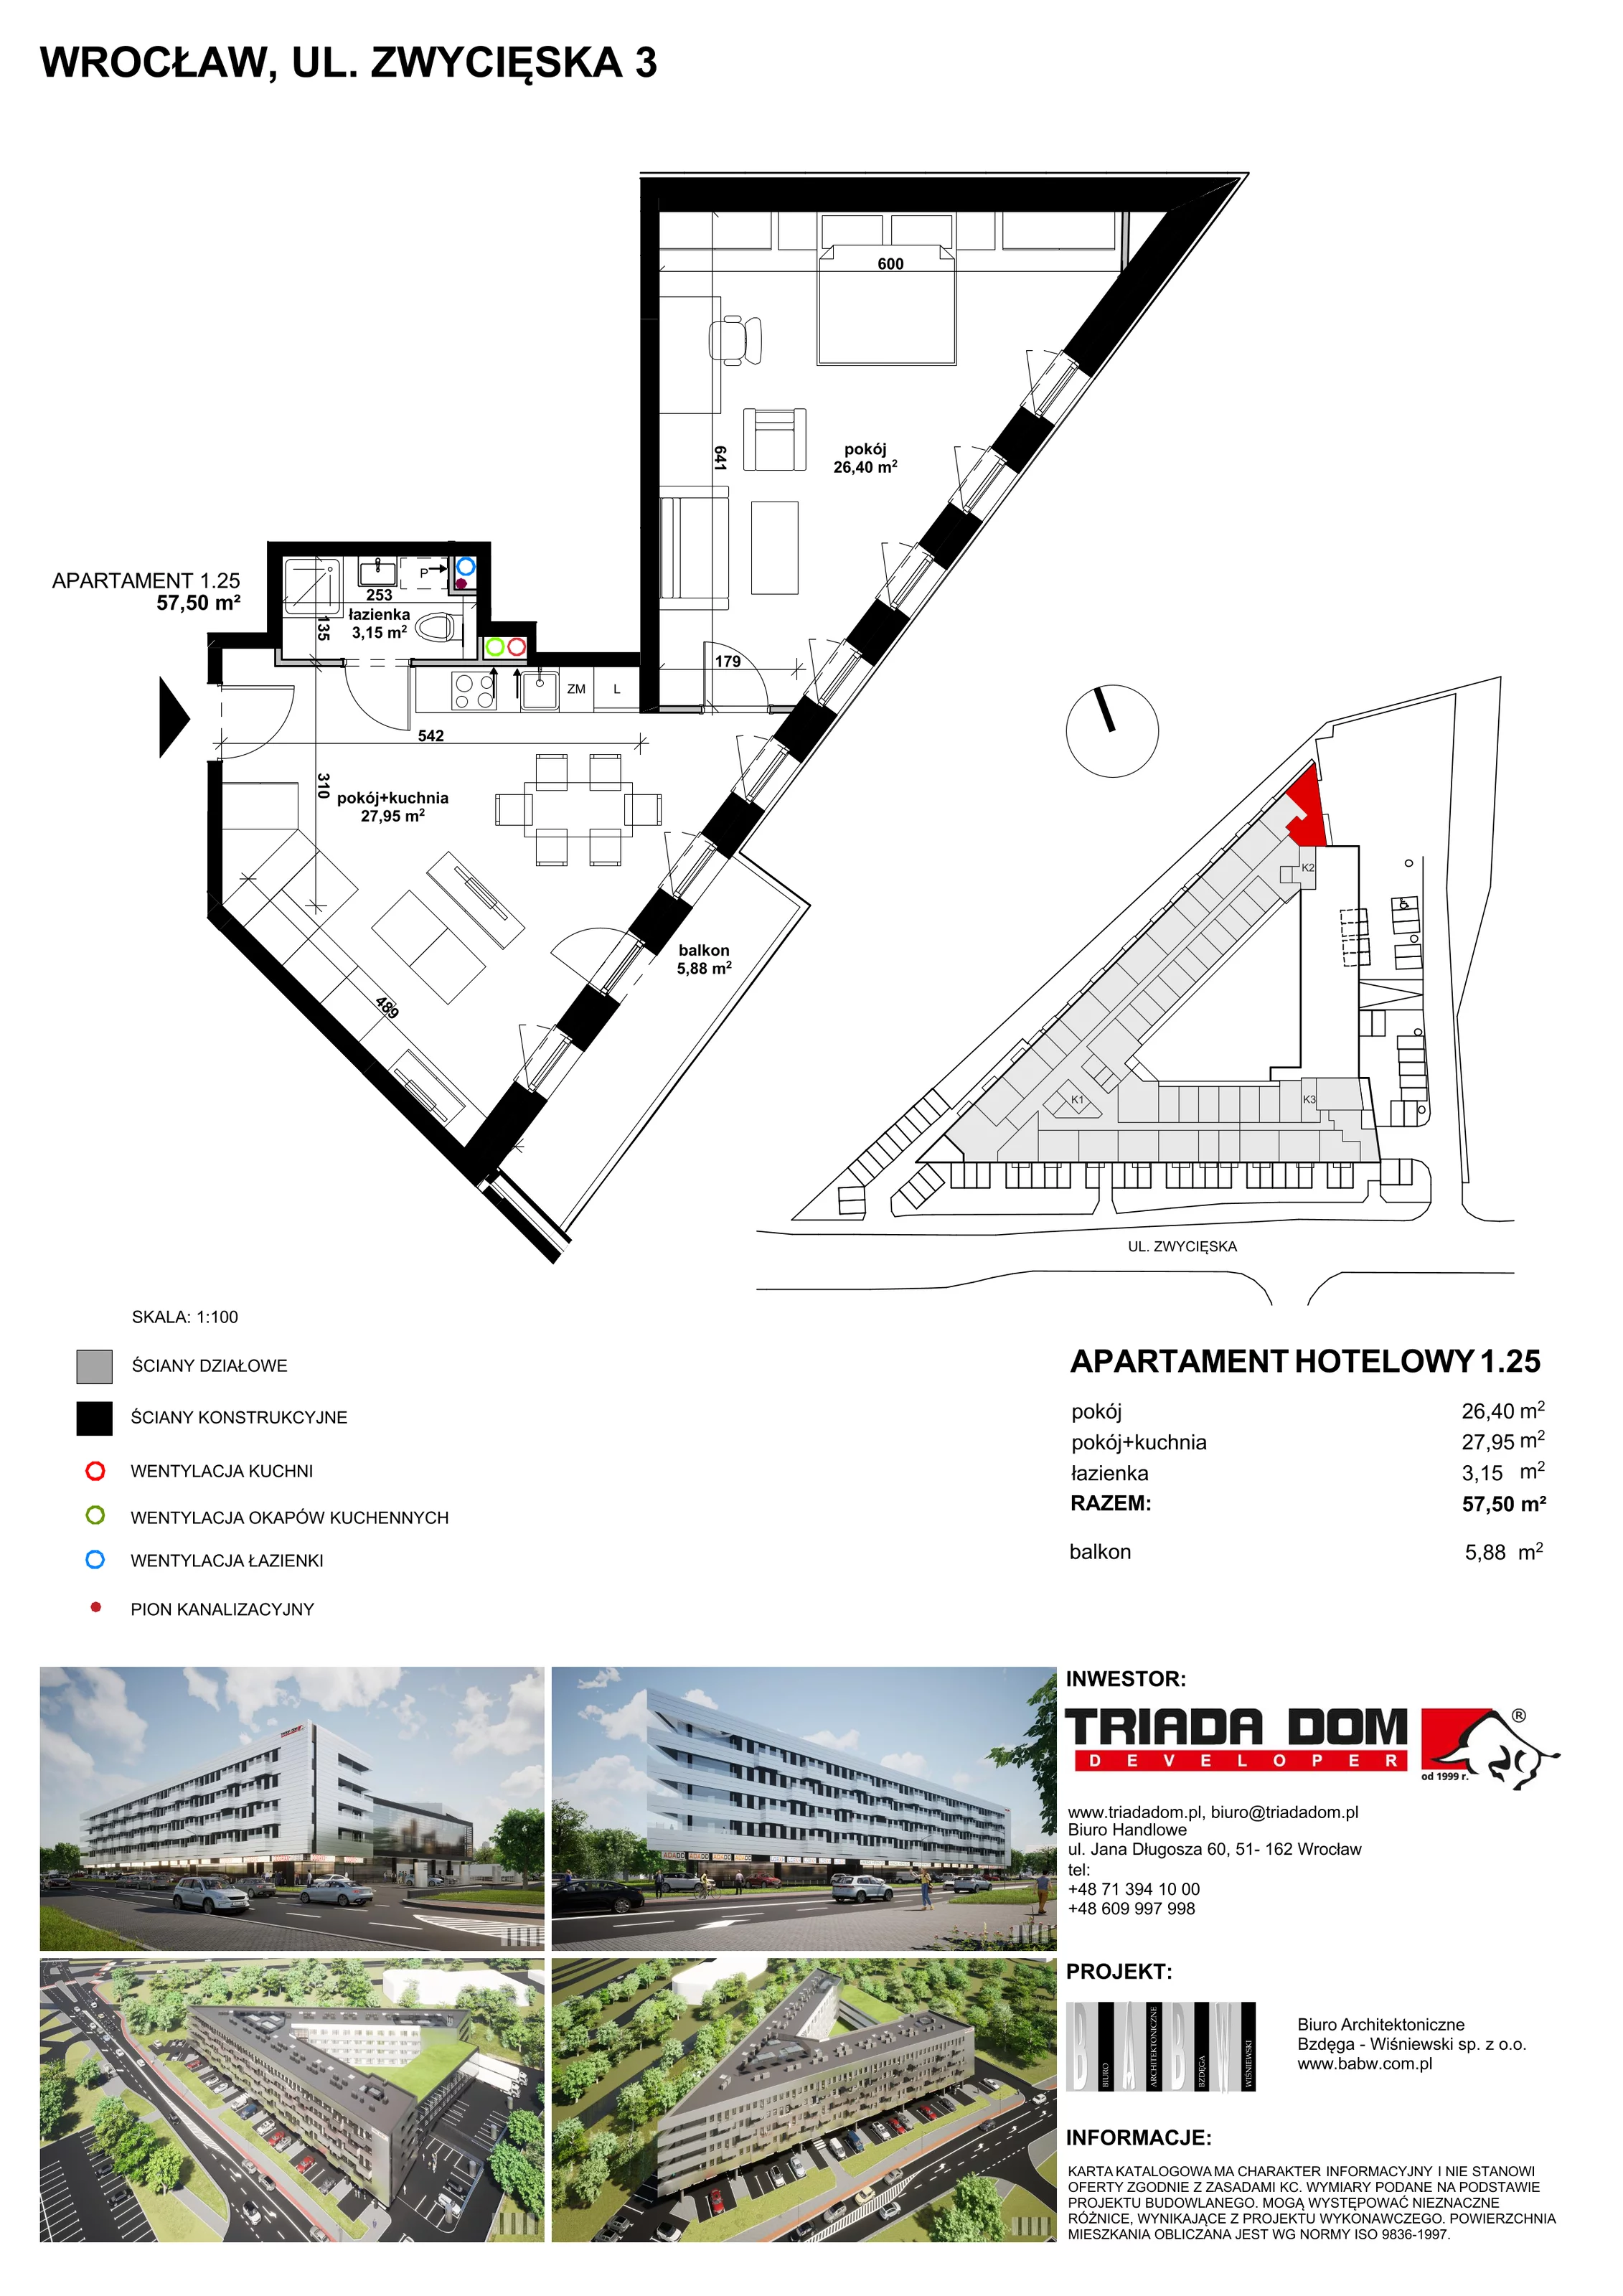 Apartament inwestycyjny 57,41 m², piętro 1, oferta nr 1/25, Apartamentowiec Zwycięska 3, Wrocław, Krzyki-Partynice, Krzyki, ul. Zwycięska 3